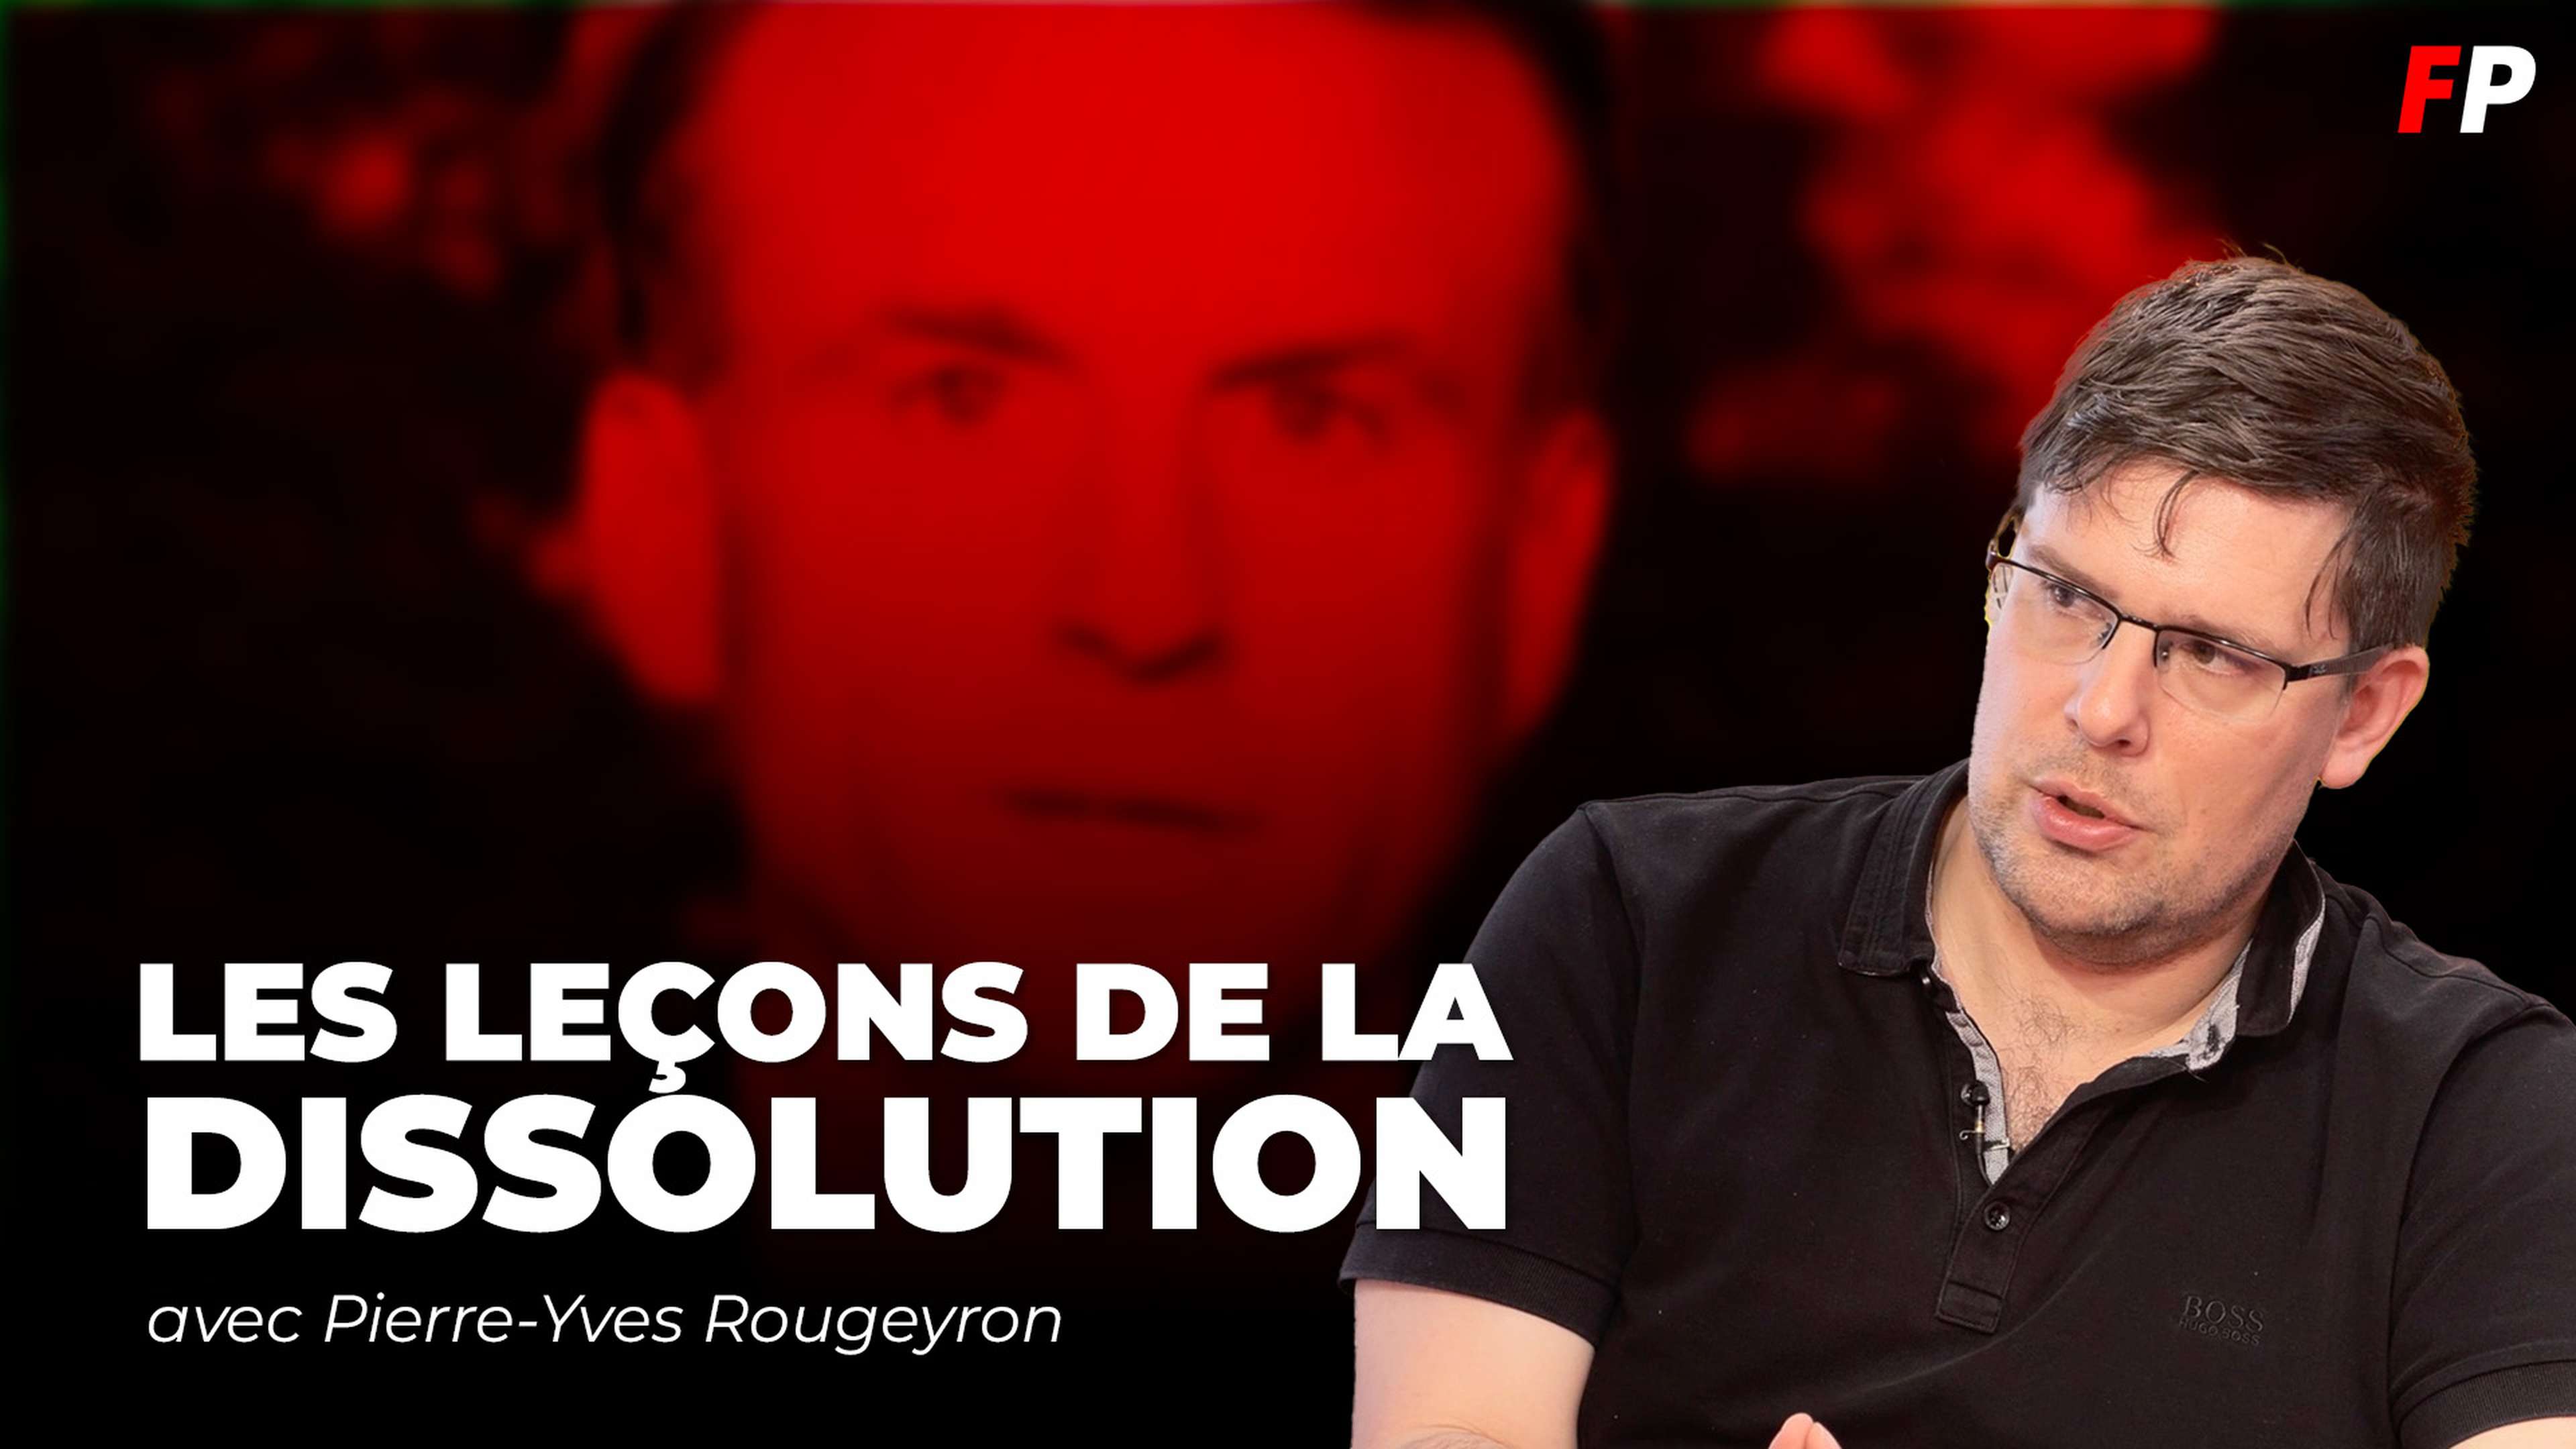 Rassemblement national, "Front Populaire" et bloc macronien : les leçons de la dissolution, avec Pierre-Yves Rougeyron